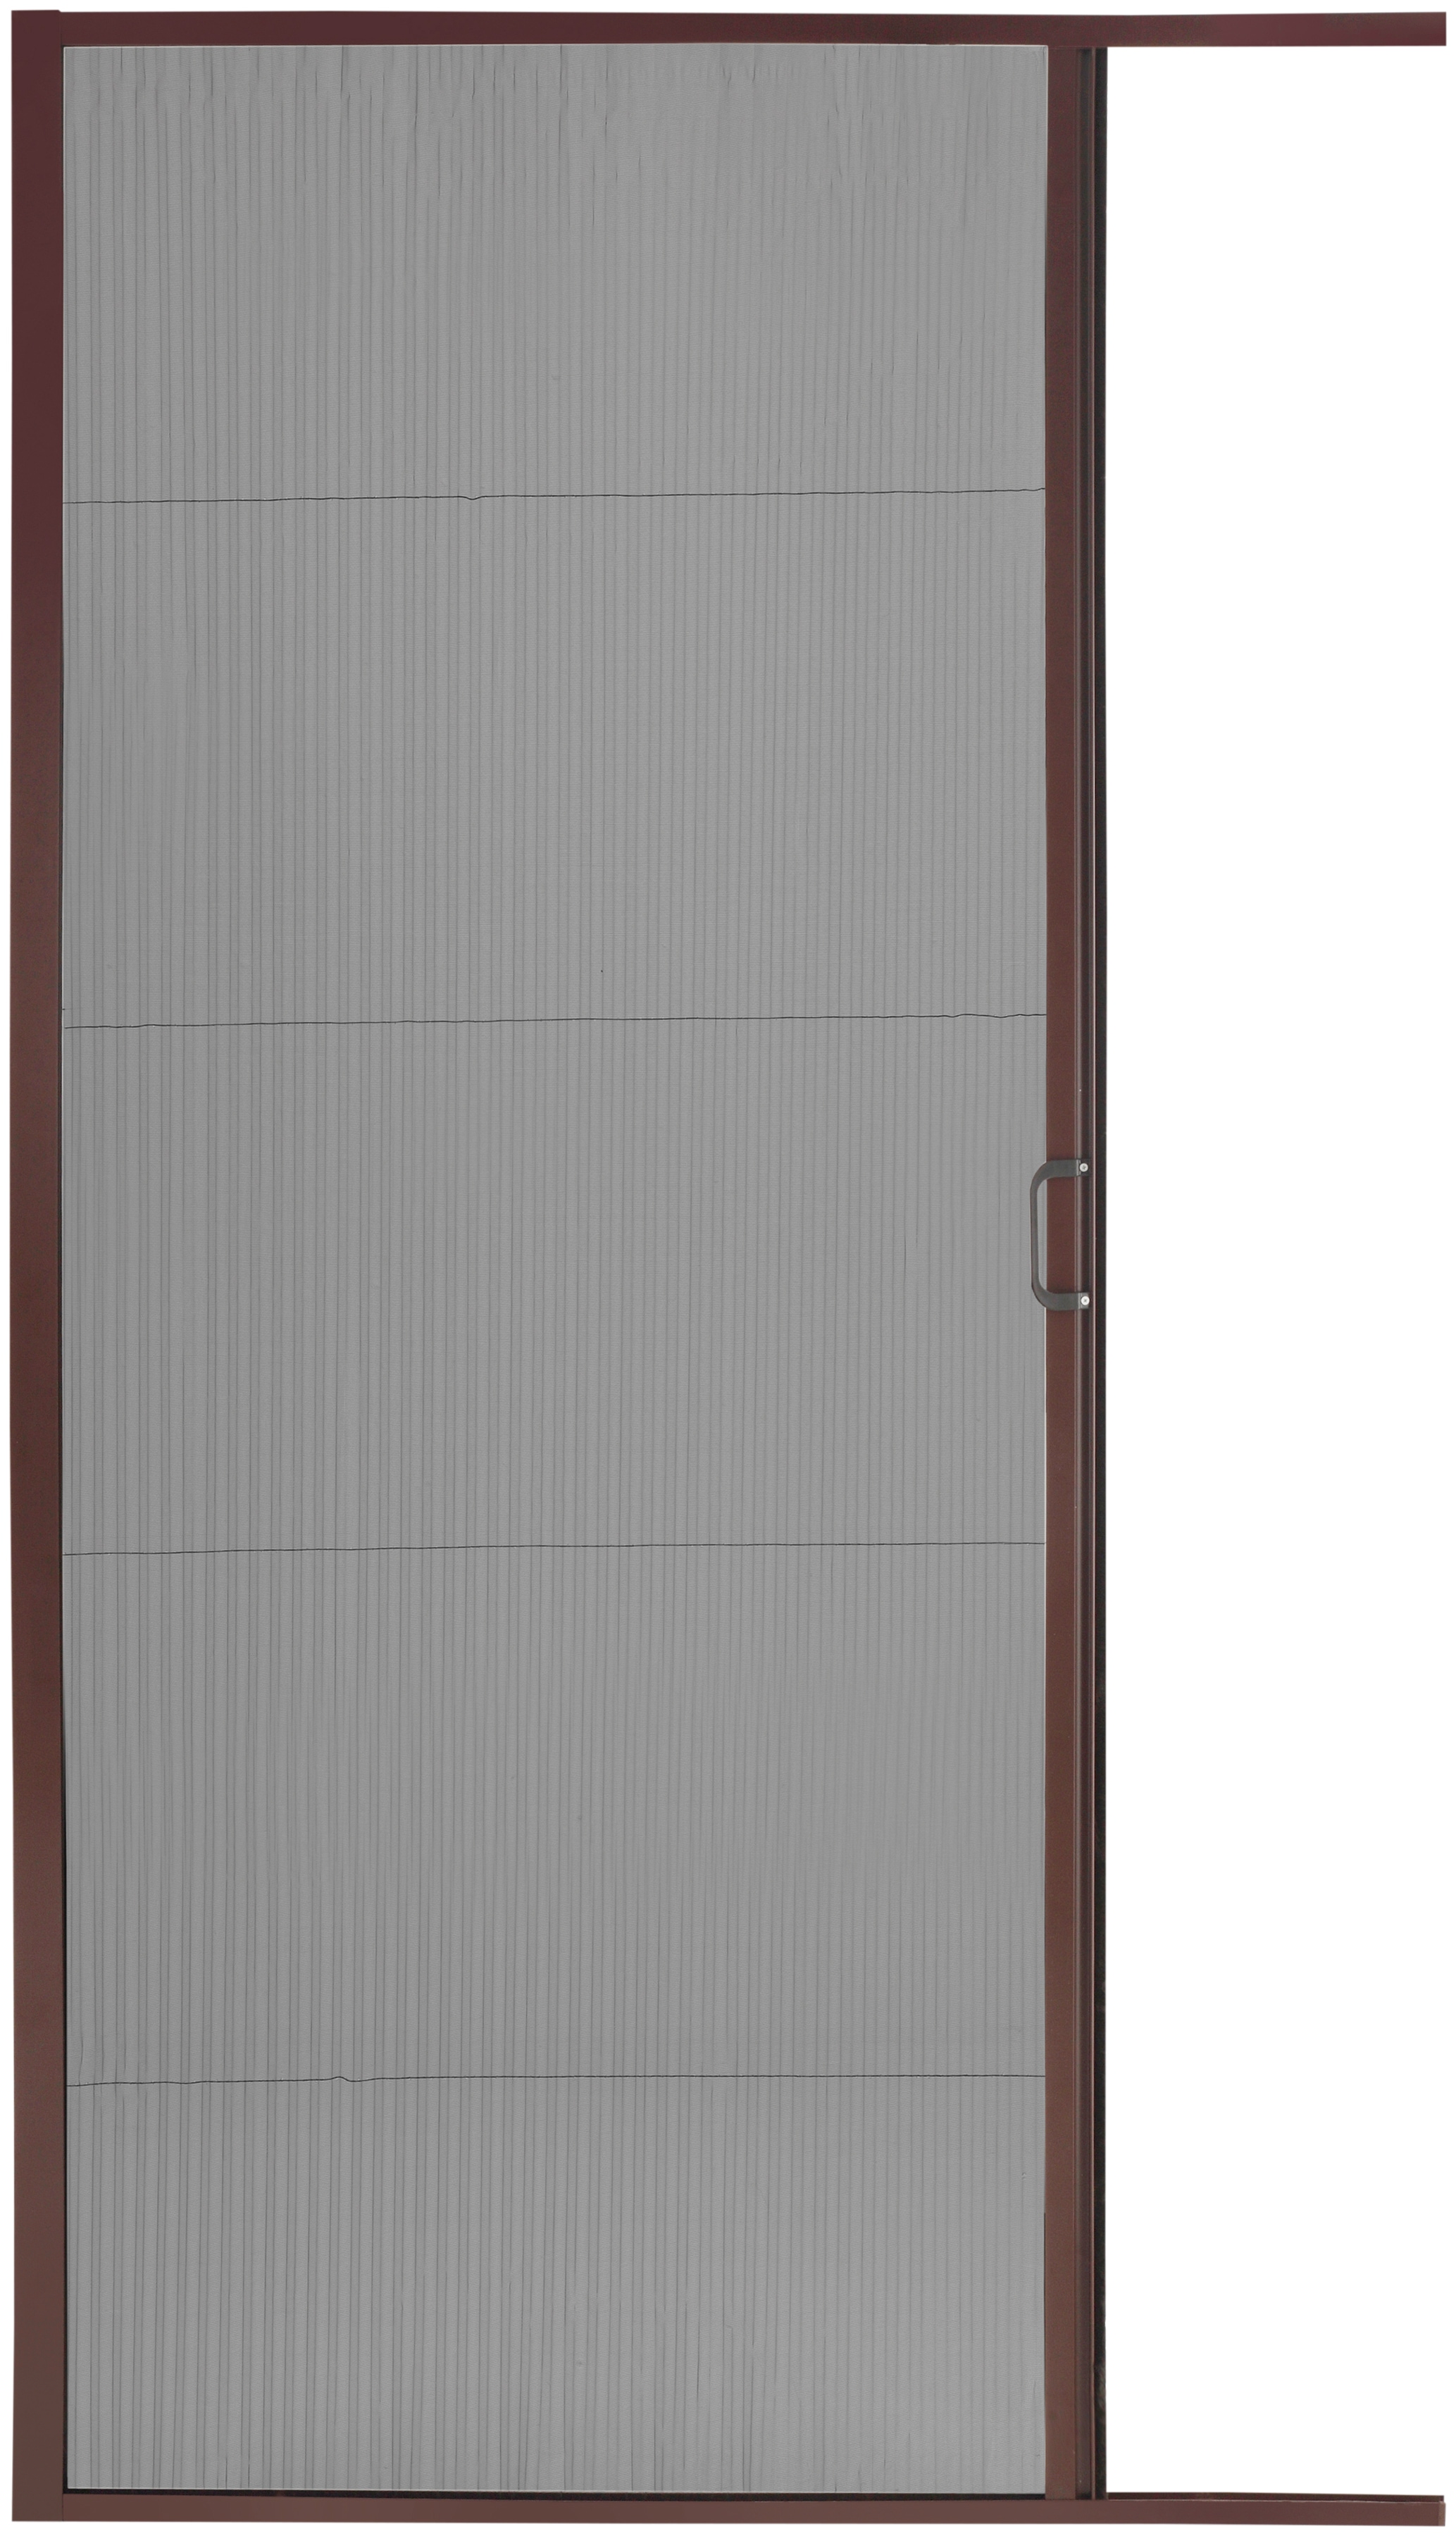 HECHT Insektenschutz-Tür braun/anthrazit, BxH: 125x220 cm